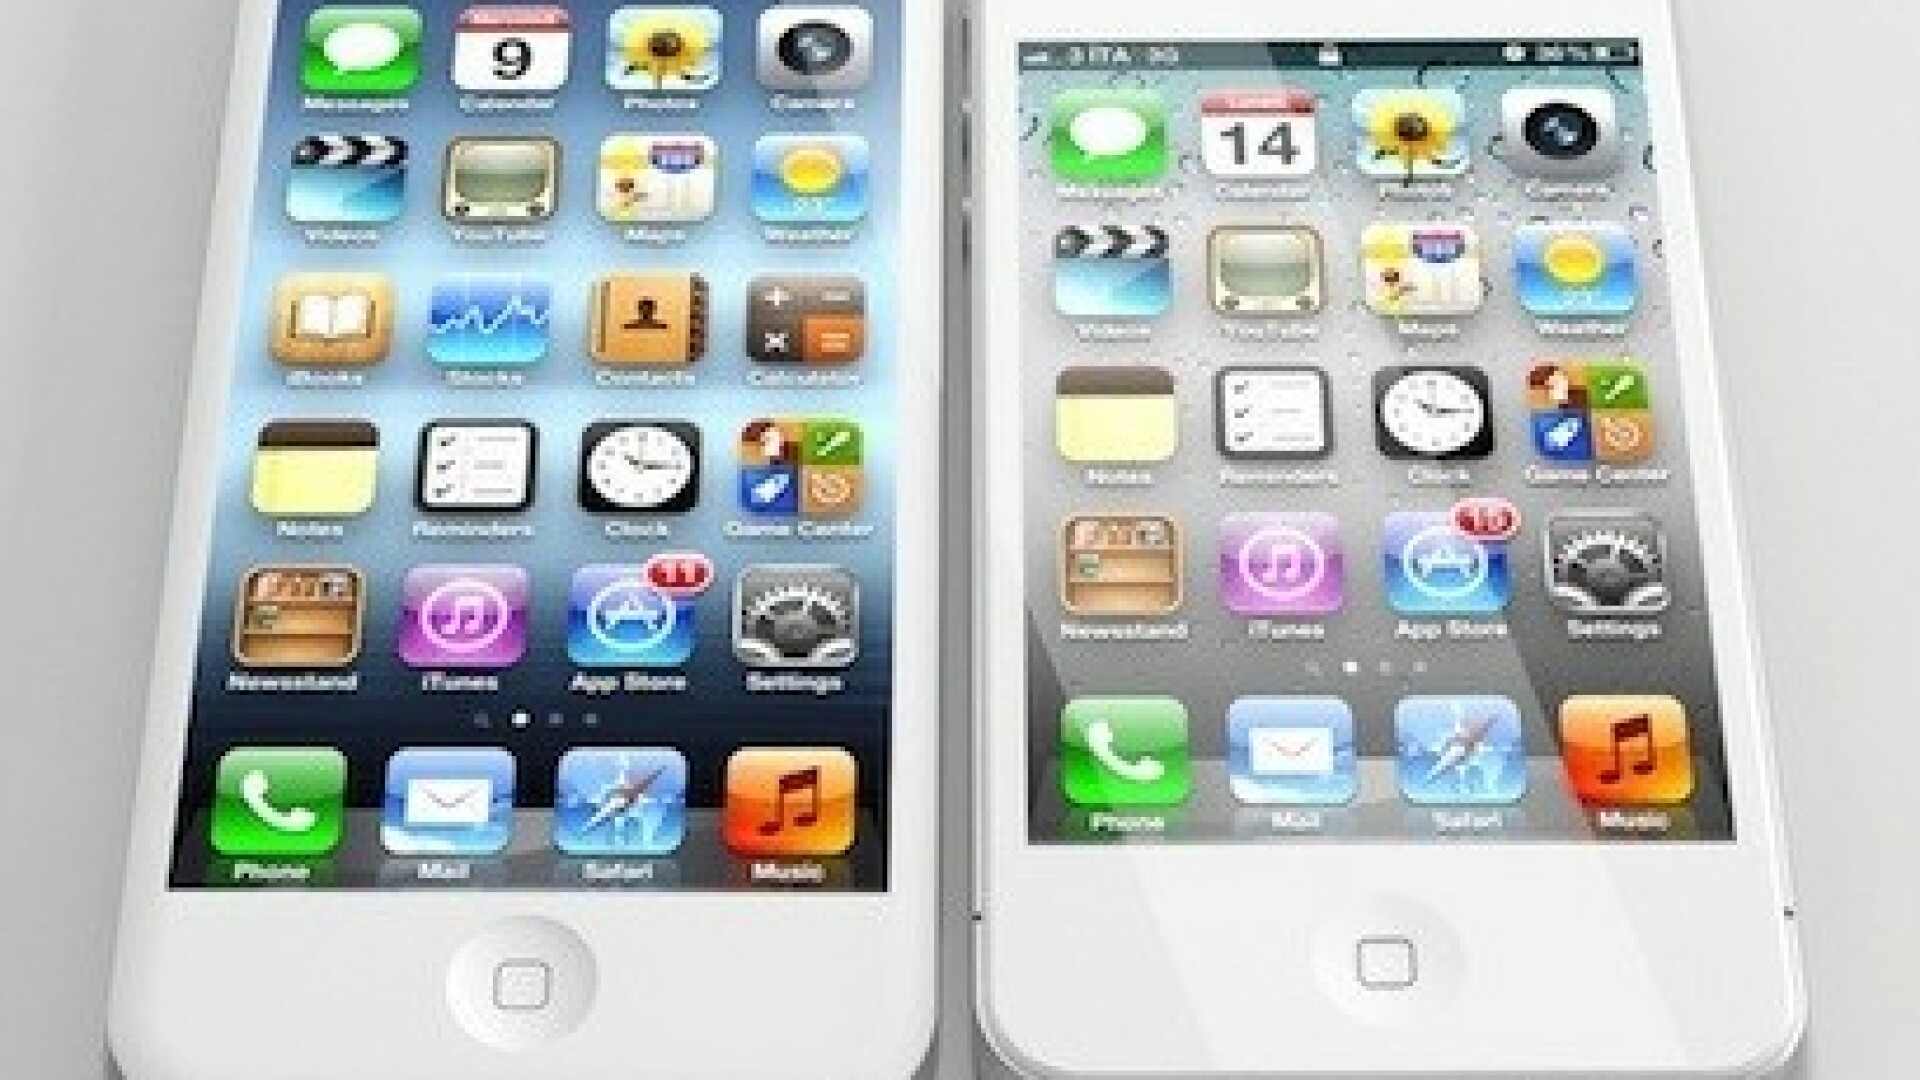 iPhone, ecran mai mare